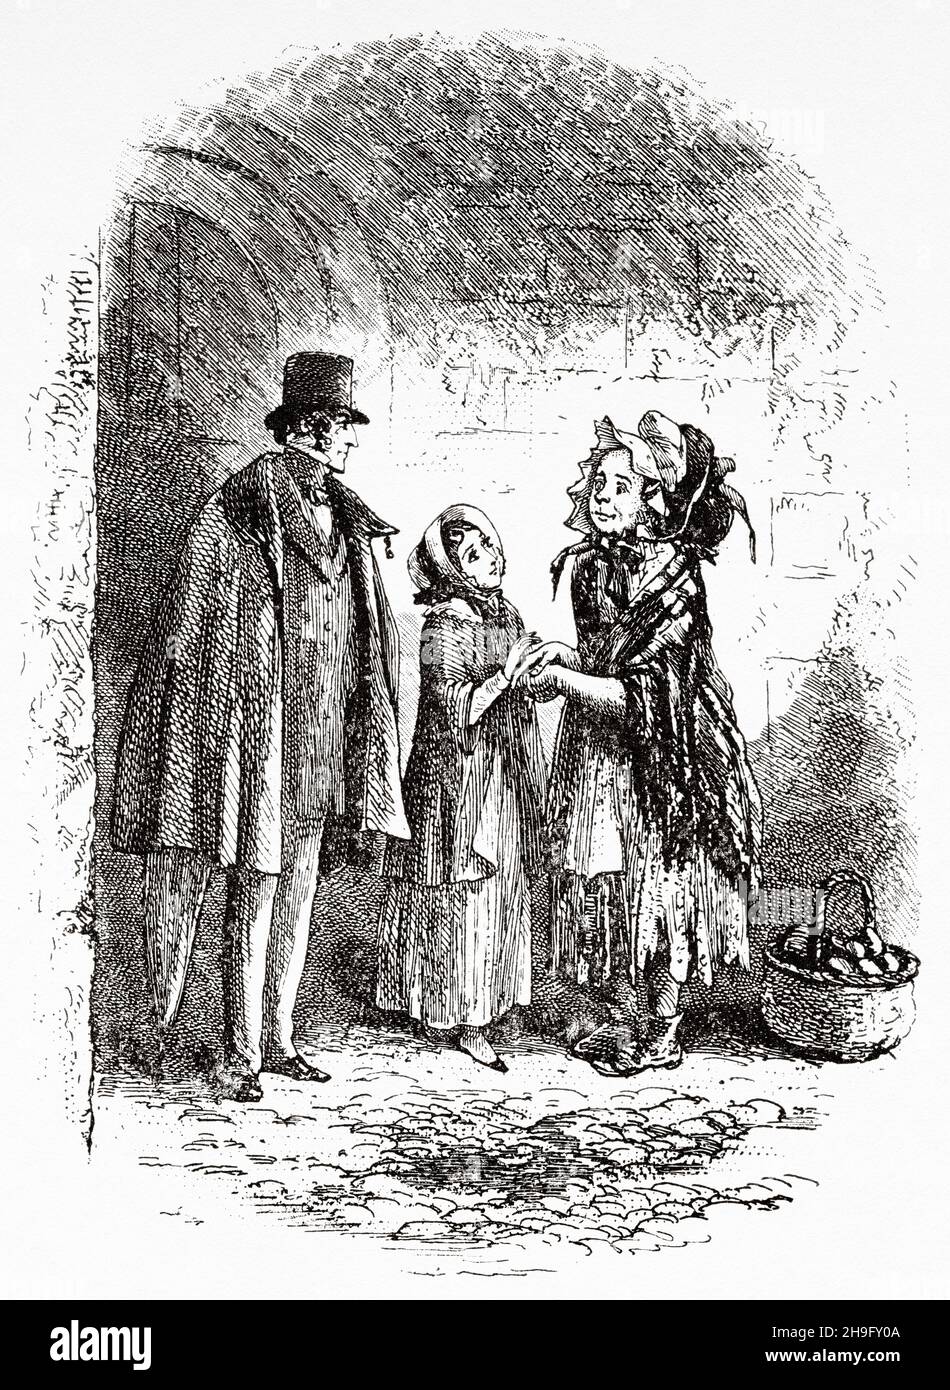 Pequeña Madre. Ilustración de la novela de Charles Dickens Little Dorrit de Hablot Knight Browne (1815-1882) Artista inglés conocido como Phiz Foto de stock